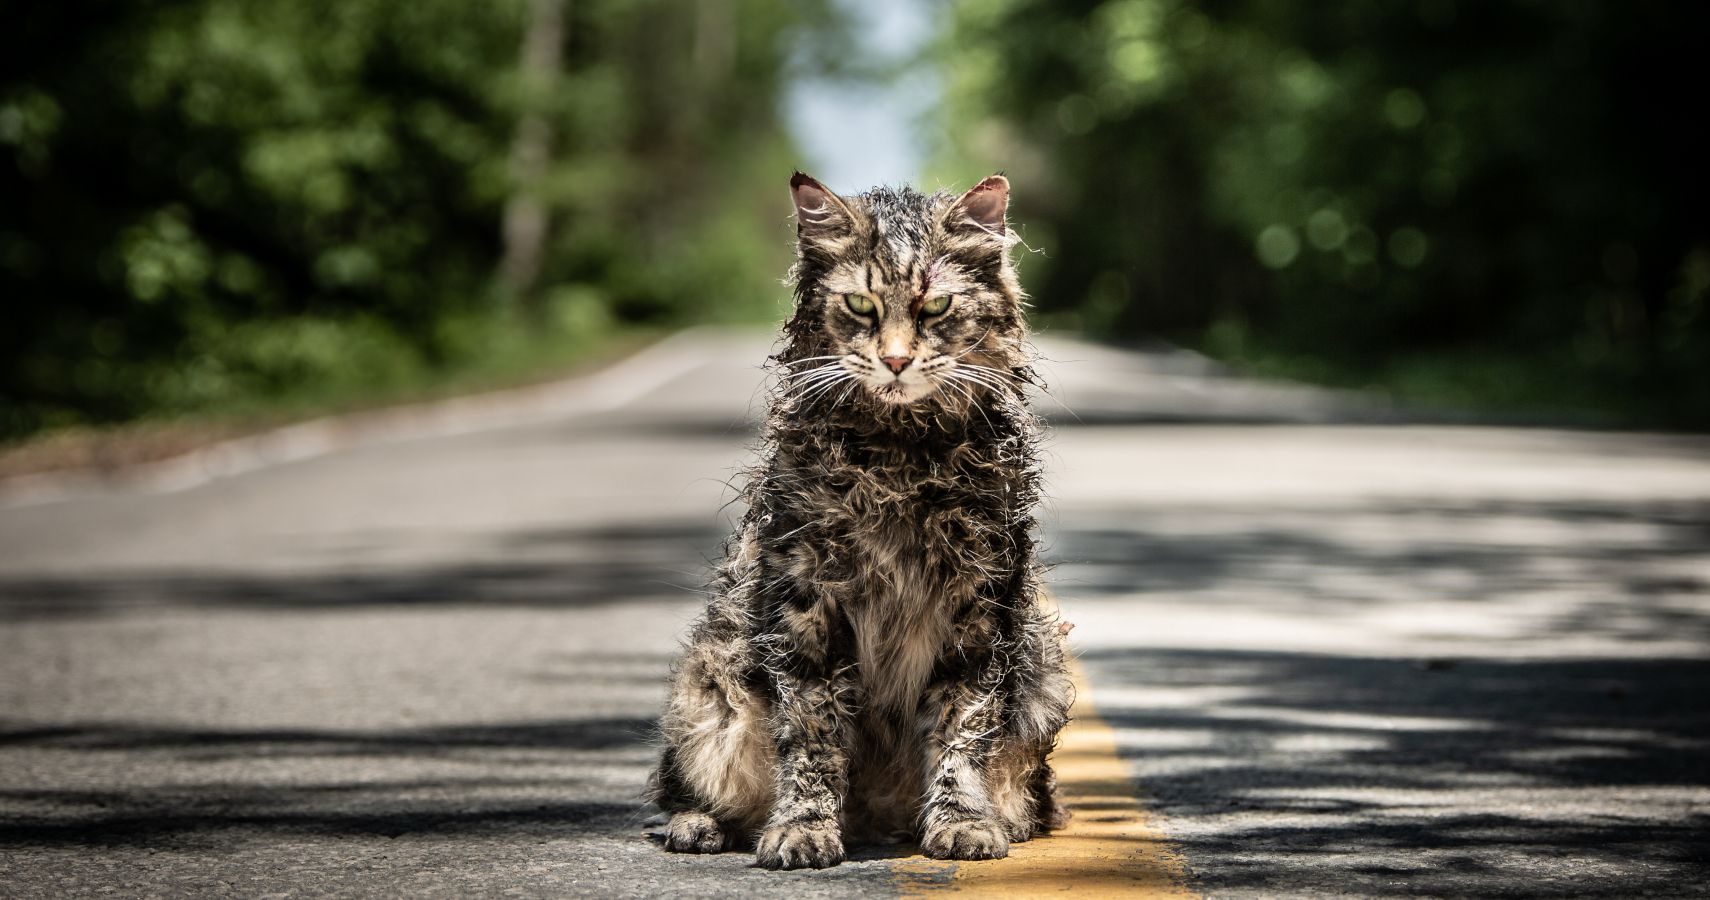 Church the Cat sentado na estrada do remake de Pet Semetary 2019.